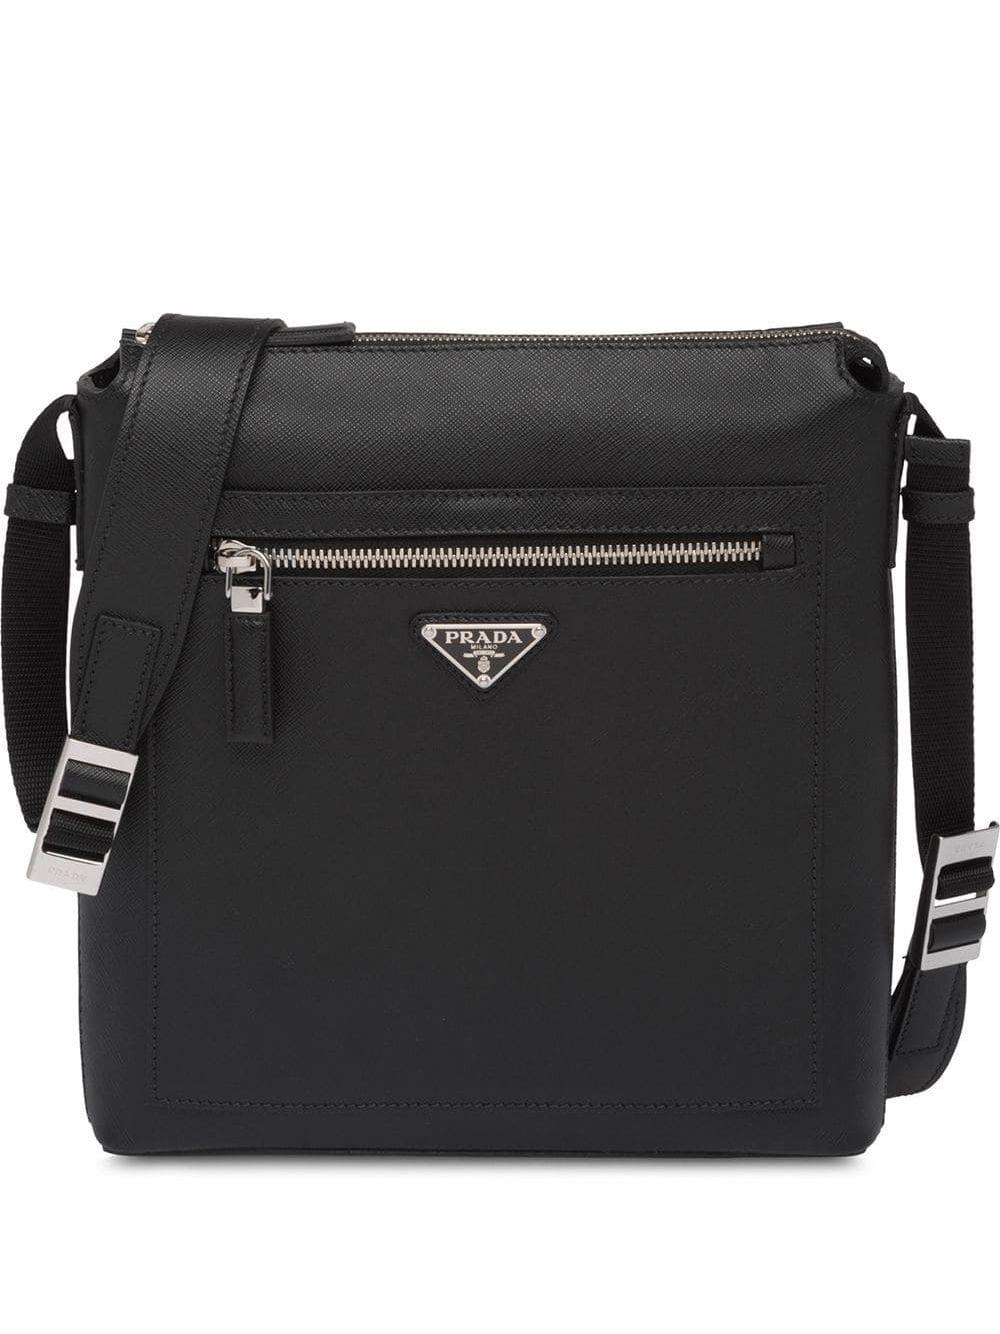 Prada Saffiano Leather Shoulder Bag in Black for Men - Lyst